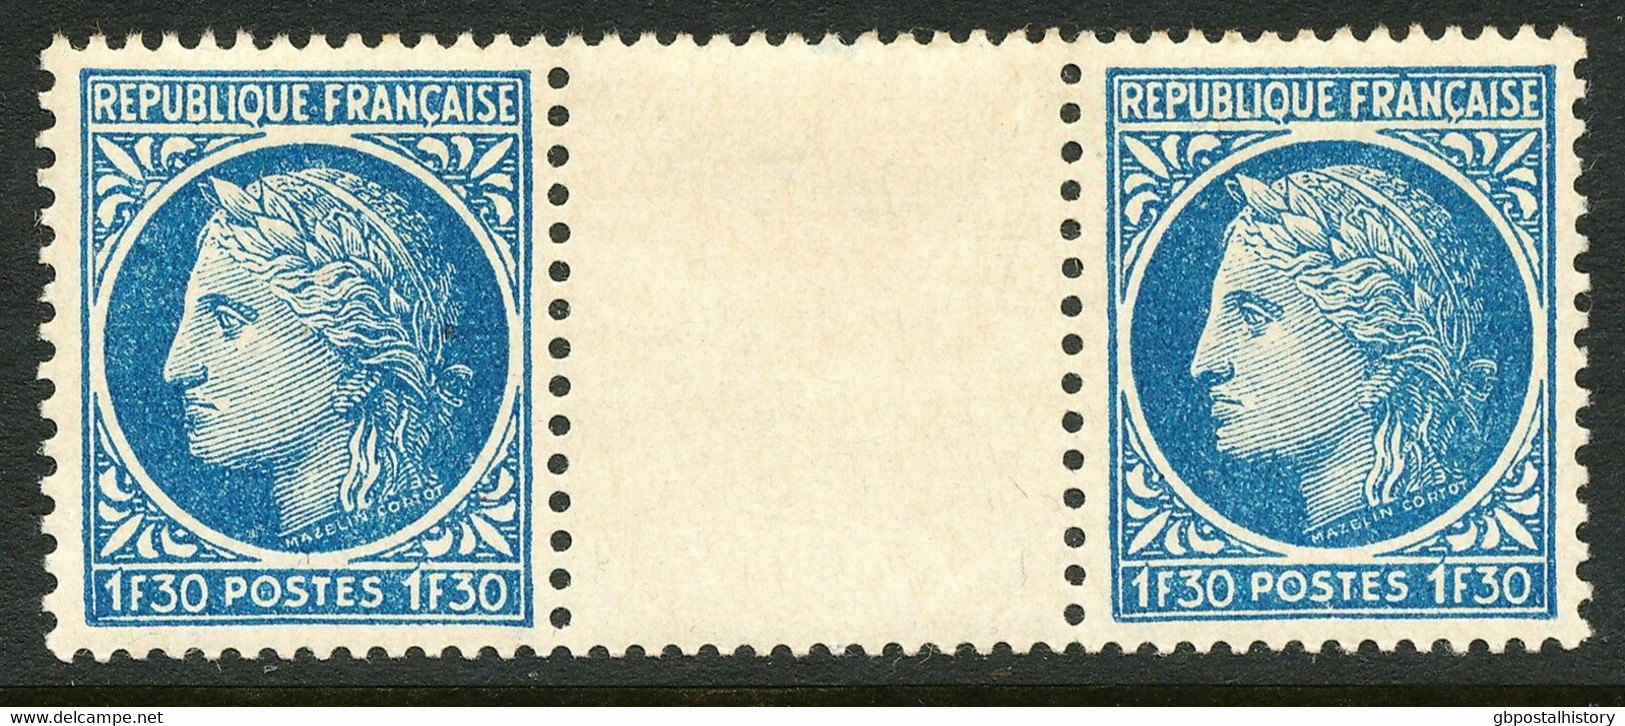 FRANKREICH 1947 Ceres (Type Mazelin) 1.30Fr. ABART Postfrisches Zwischenstegpaar - Unused Stamps